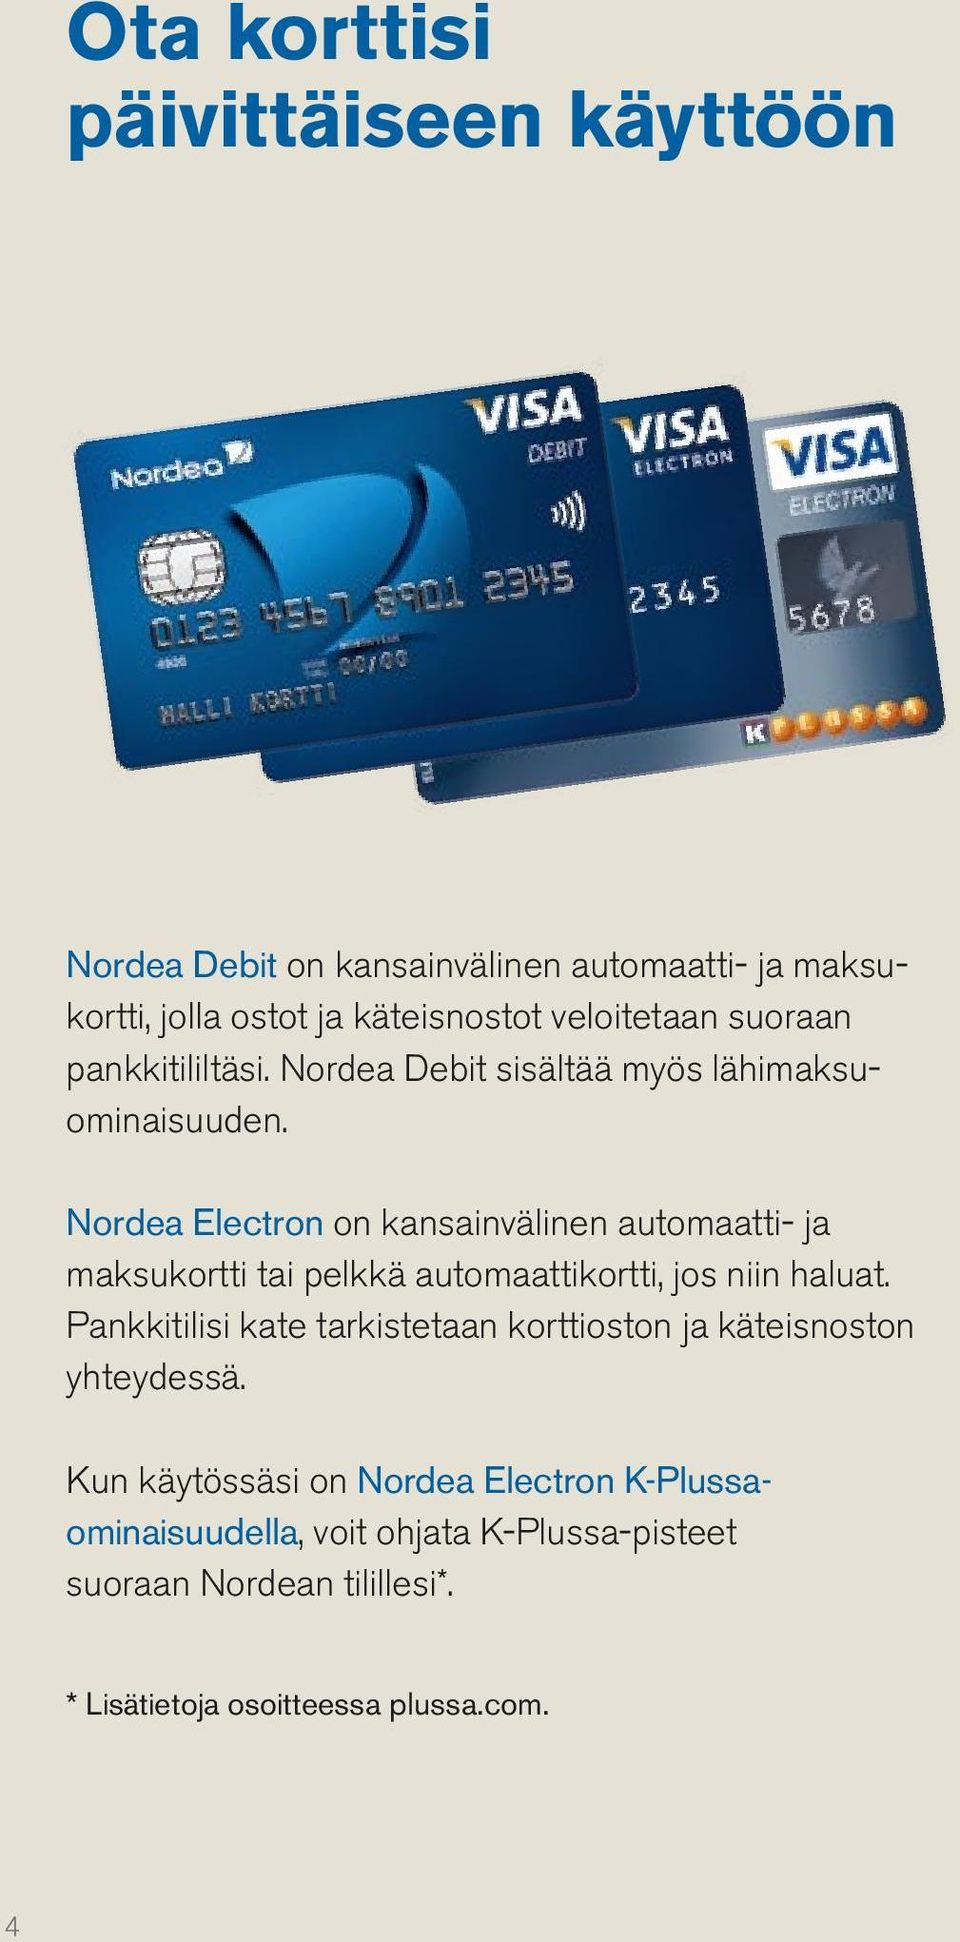 Nordea Electron on kansainvälinen automaatti- ja maksukortti tai pelkkä automaattikortti, jos niin haluat.